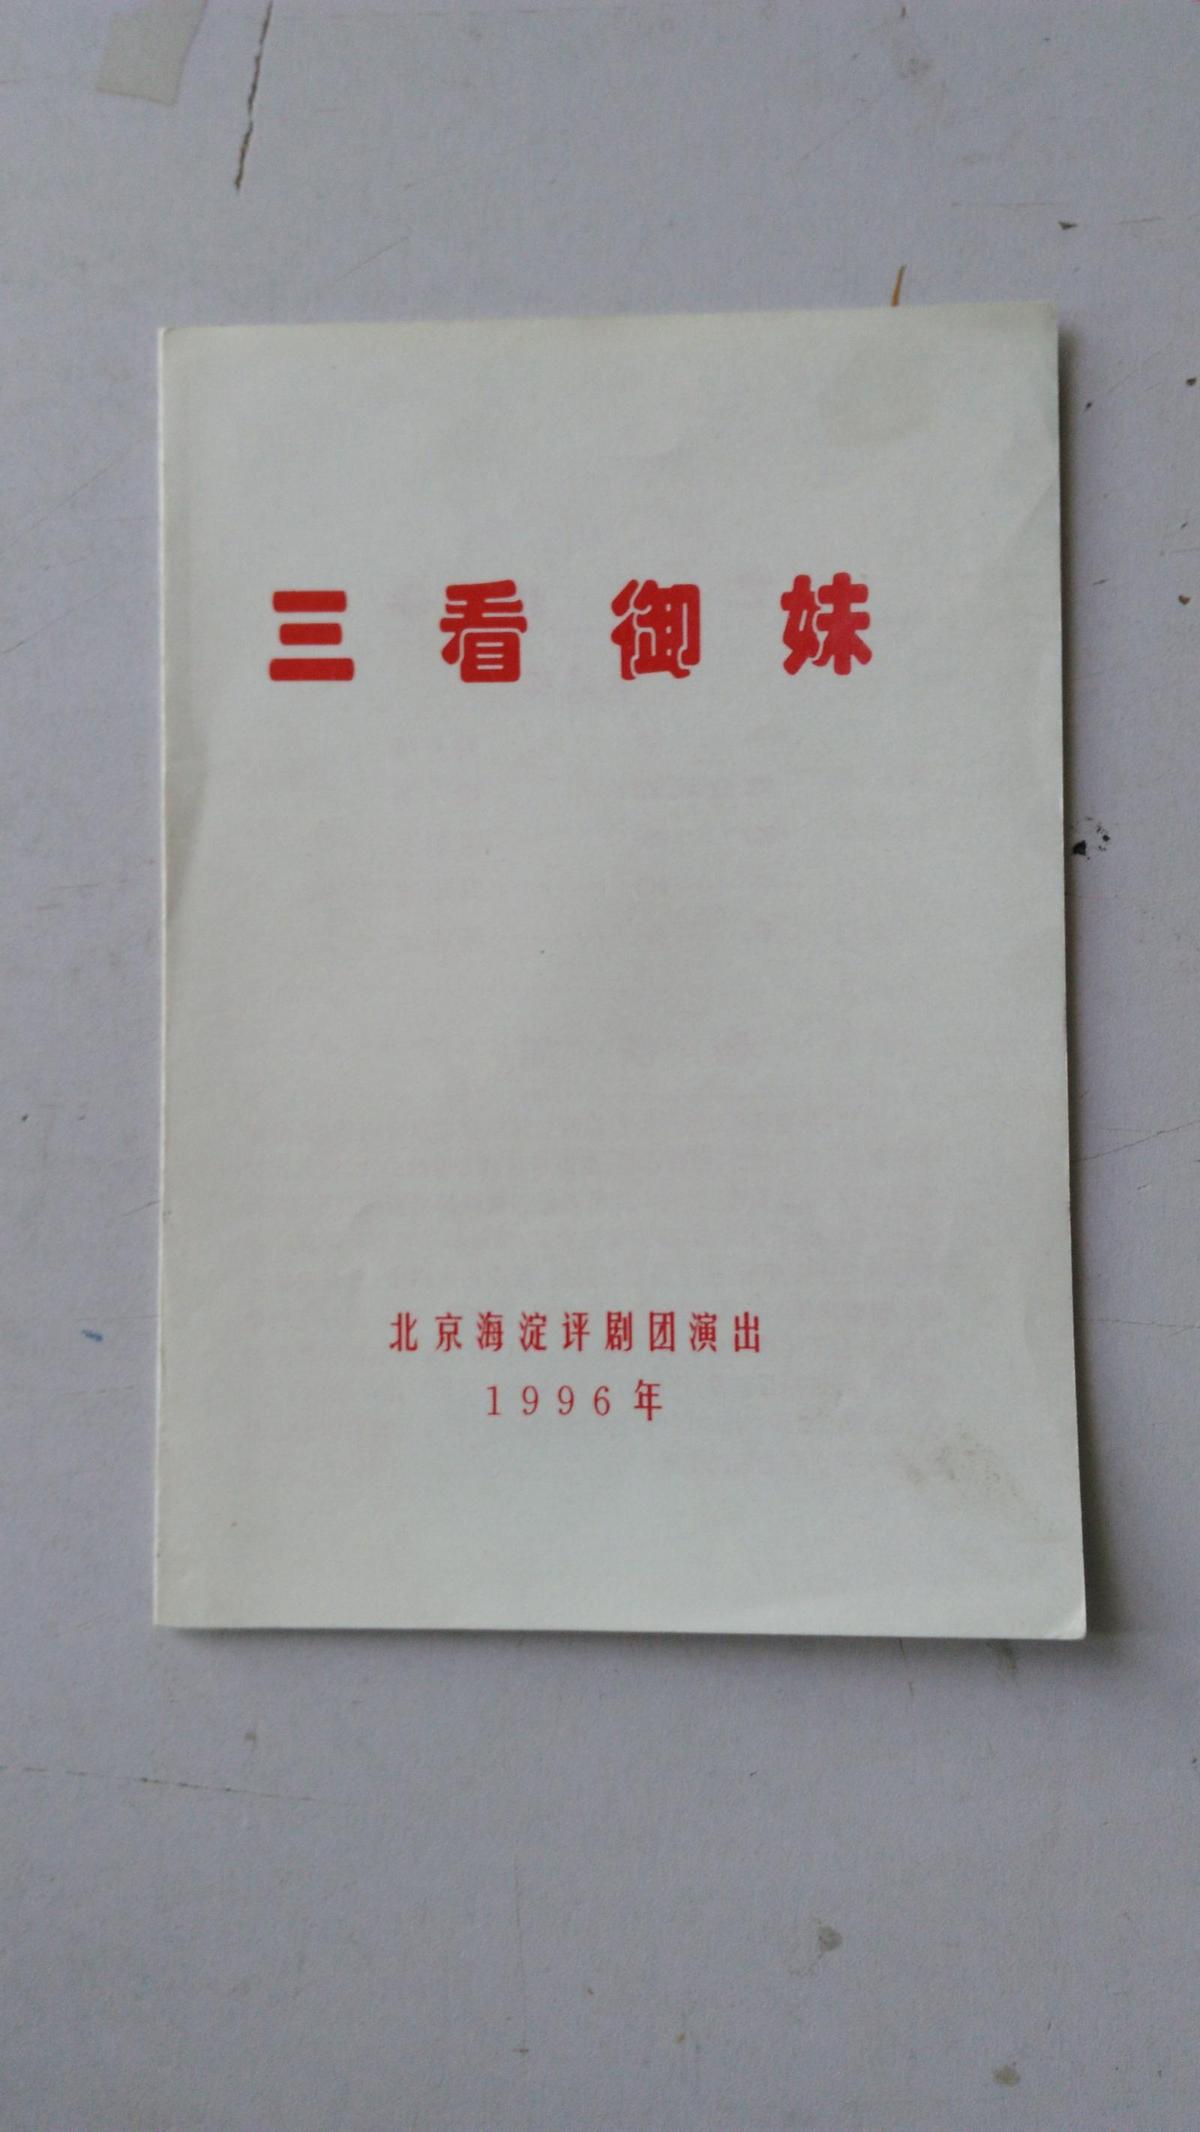 评剧节目单  三看御妹  北京海淀评剧团演出   1996年